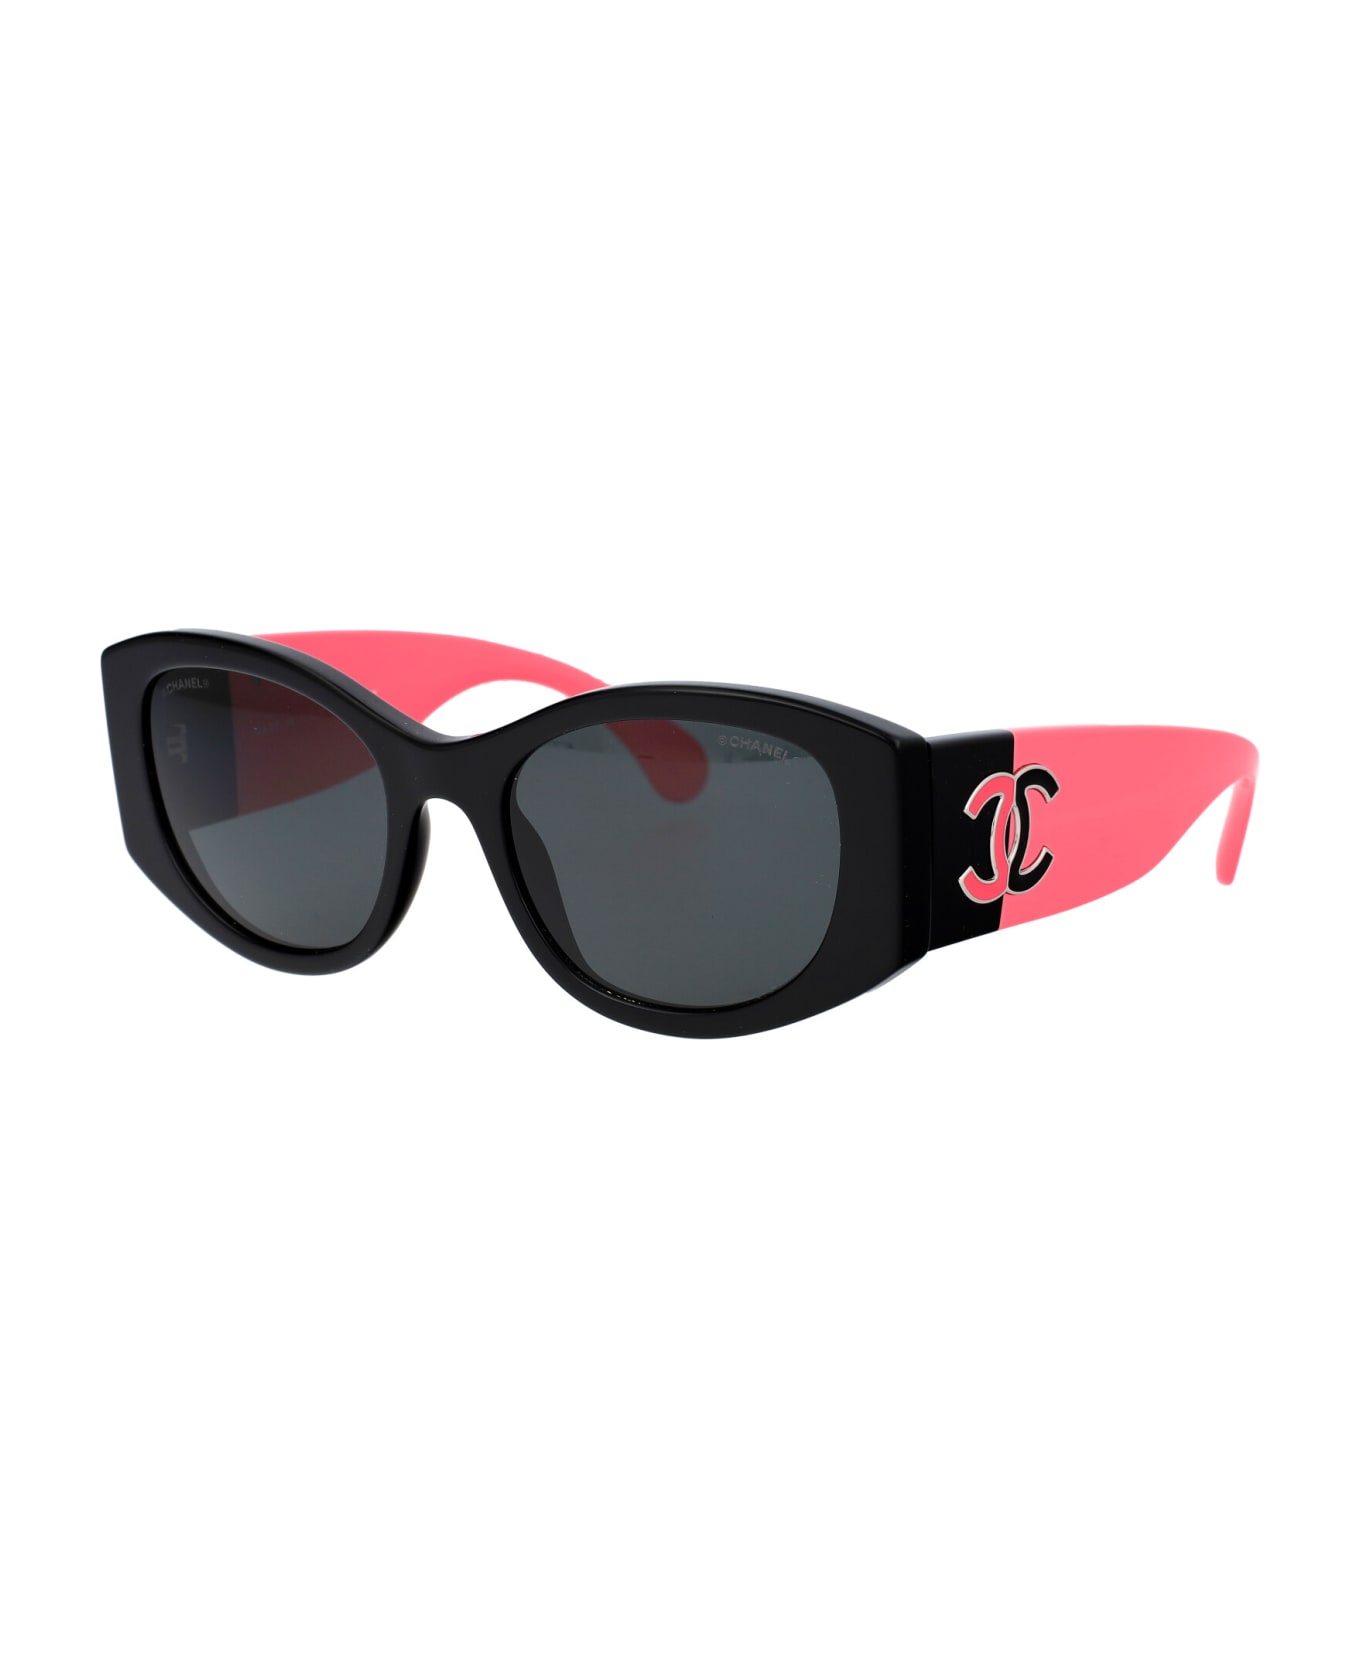 Chanel 0ch5524 Sunglasses - C535S4 BLACK